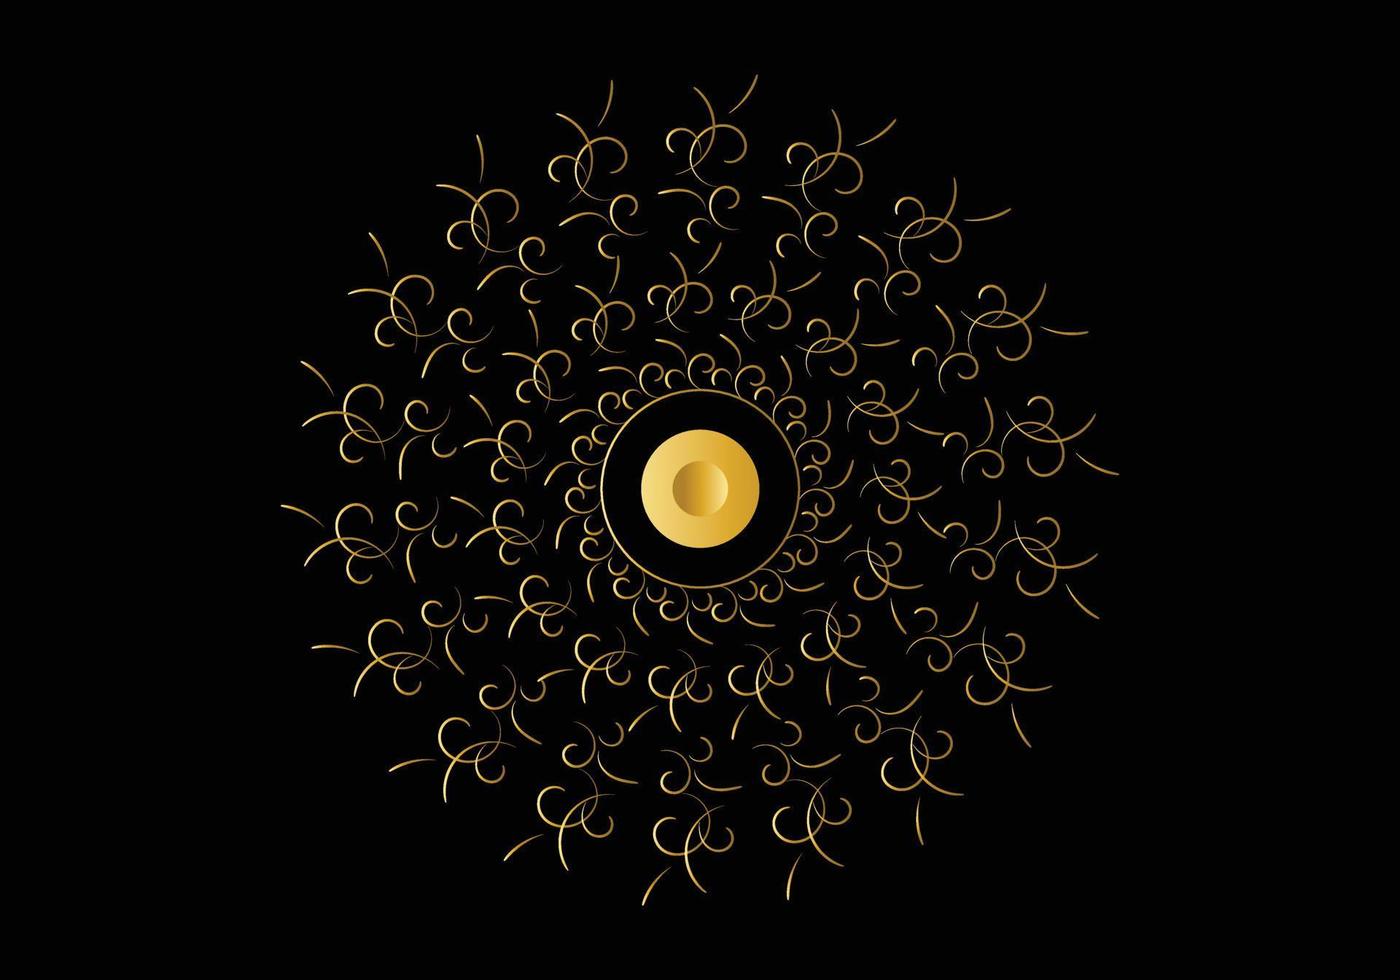 moldura dourada com ornamento em círculo sobre fundo preto. mandala de ouro de luxo, design de desenho à mão. vetor